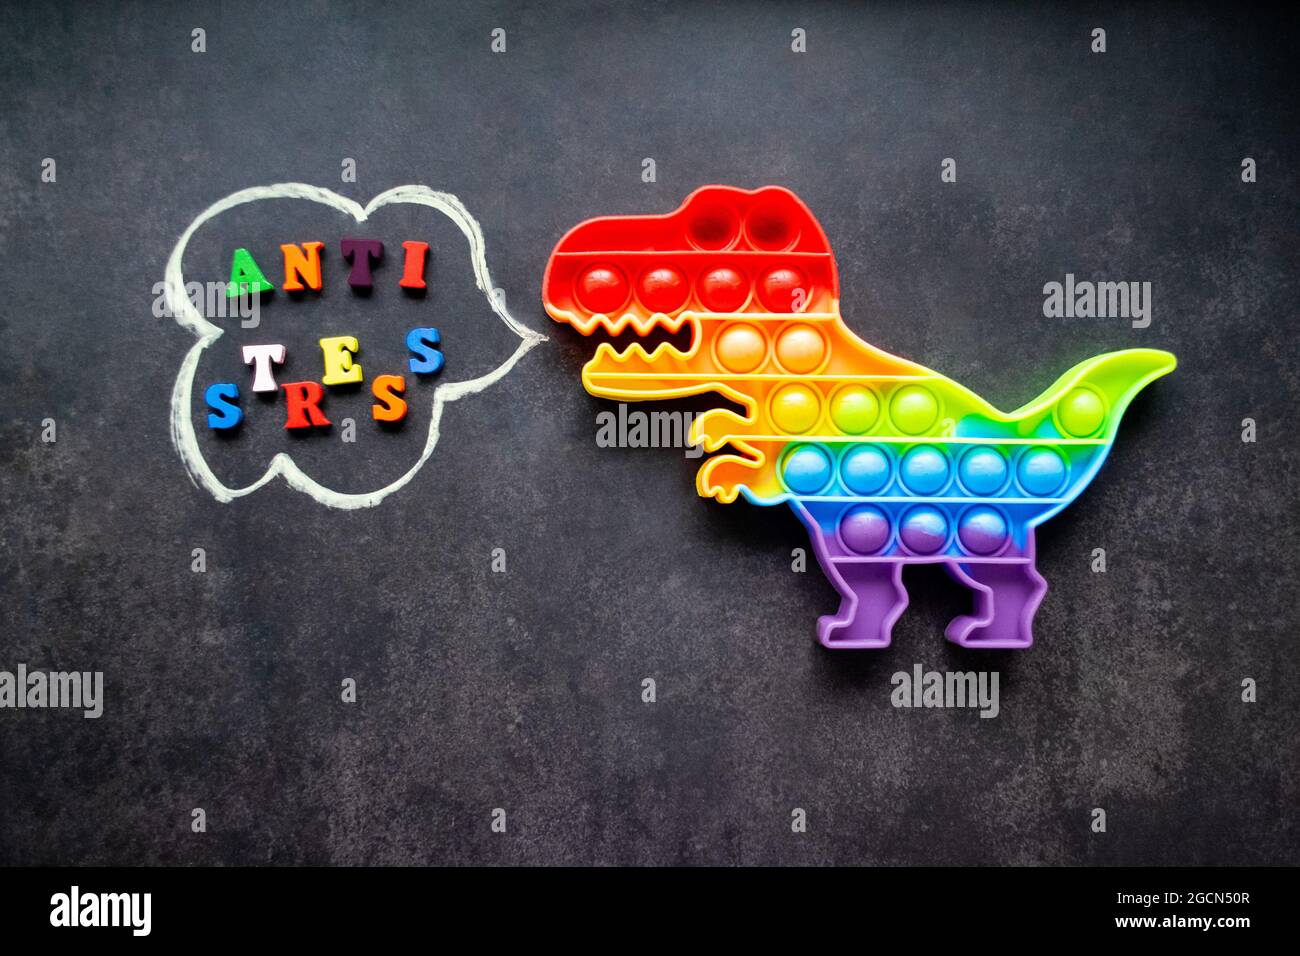 Juguete pop que dinosaurio arco iris colores sobre un fondo negro con letras multicolores y la inscripción-Anti-estrés en una burbuja de voz. Foto de stock